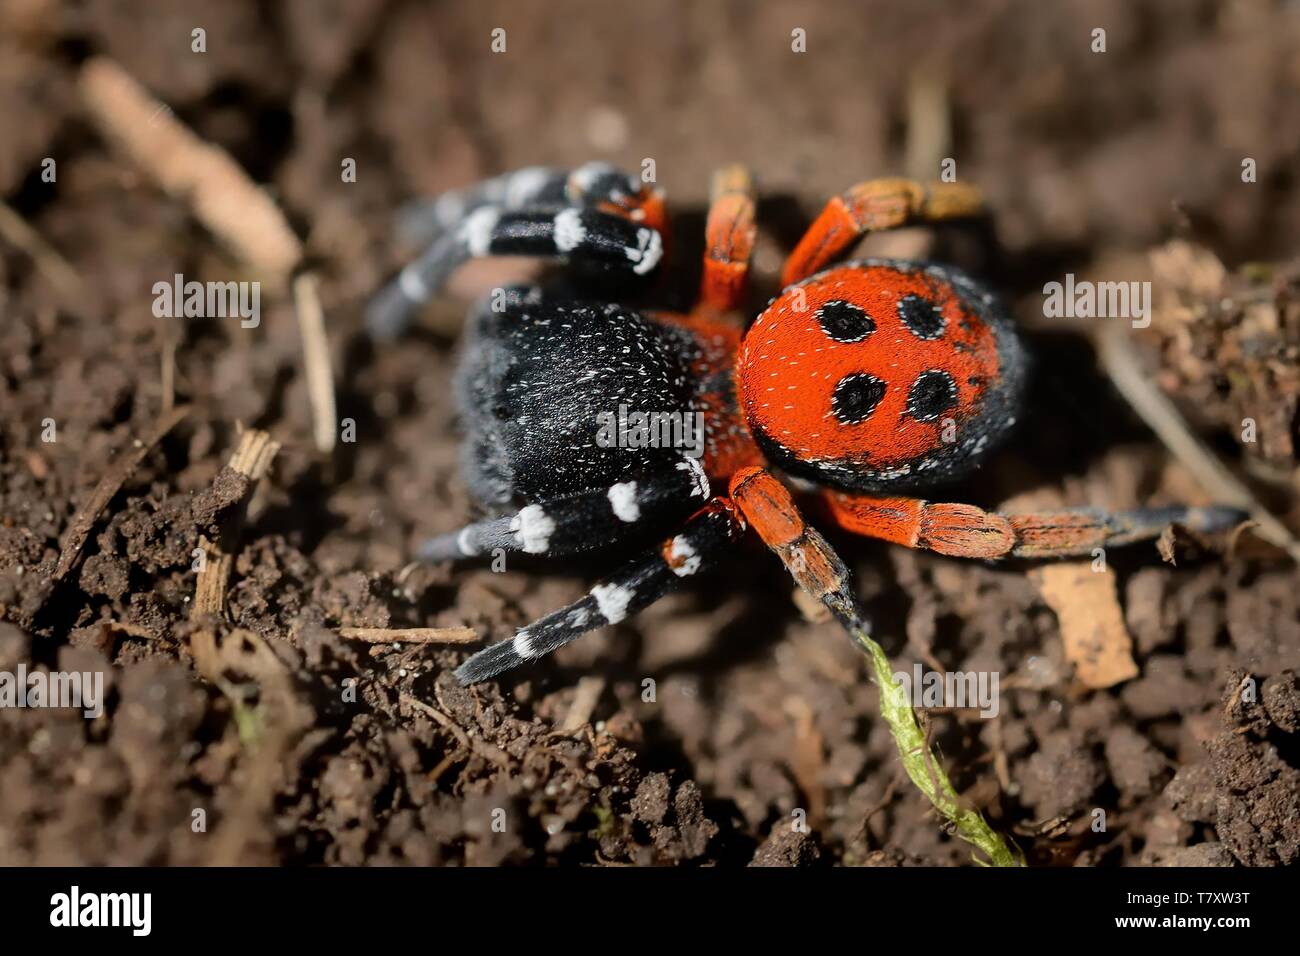 Spider Eresus moravicus - Mann sucht Frau. Mähren, Tschechien, Europa. Stockfoto